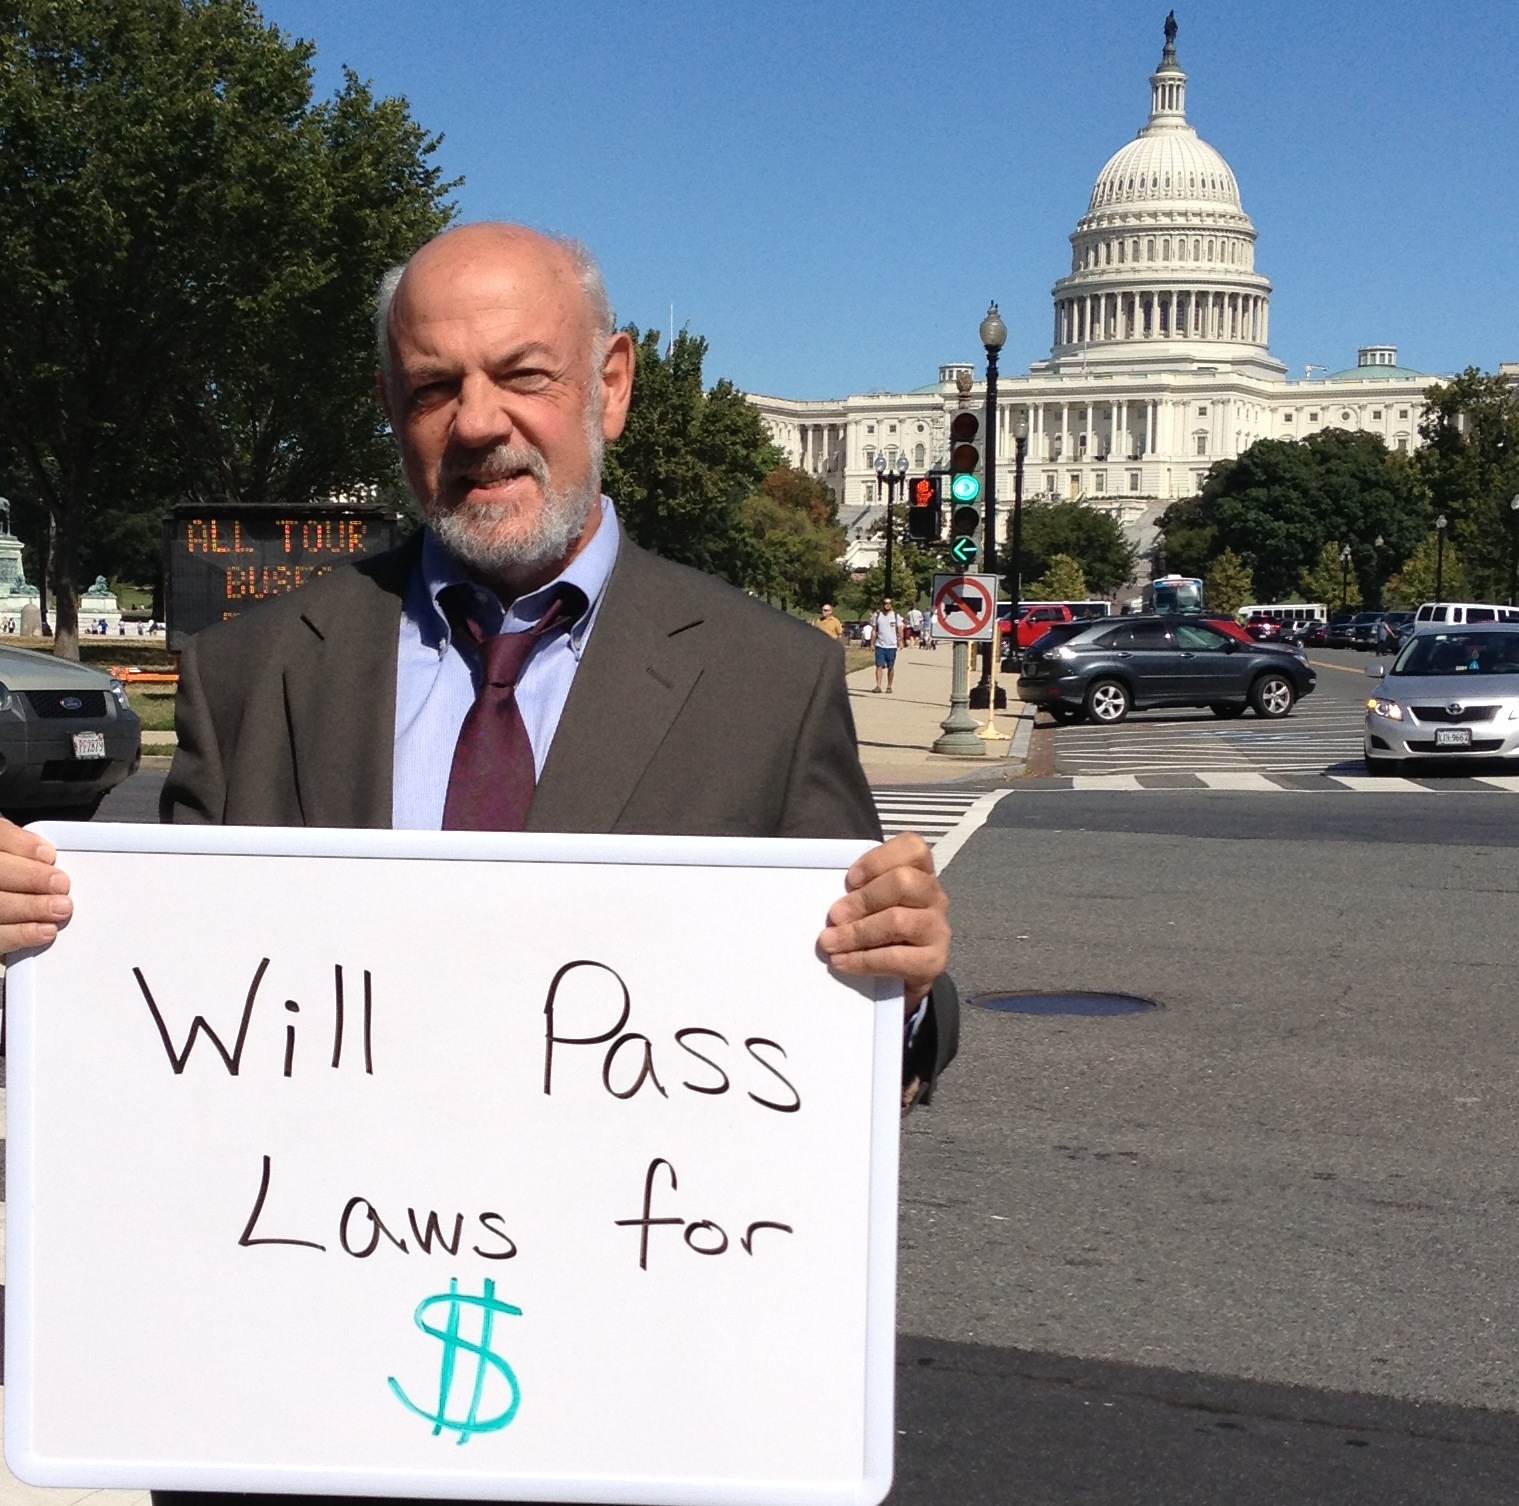 Ken_at_Congress_Will_pass_laws_for_money.jpg